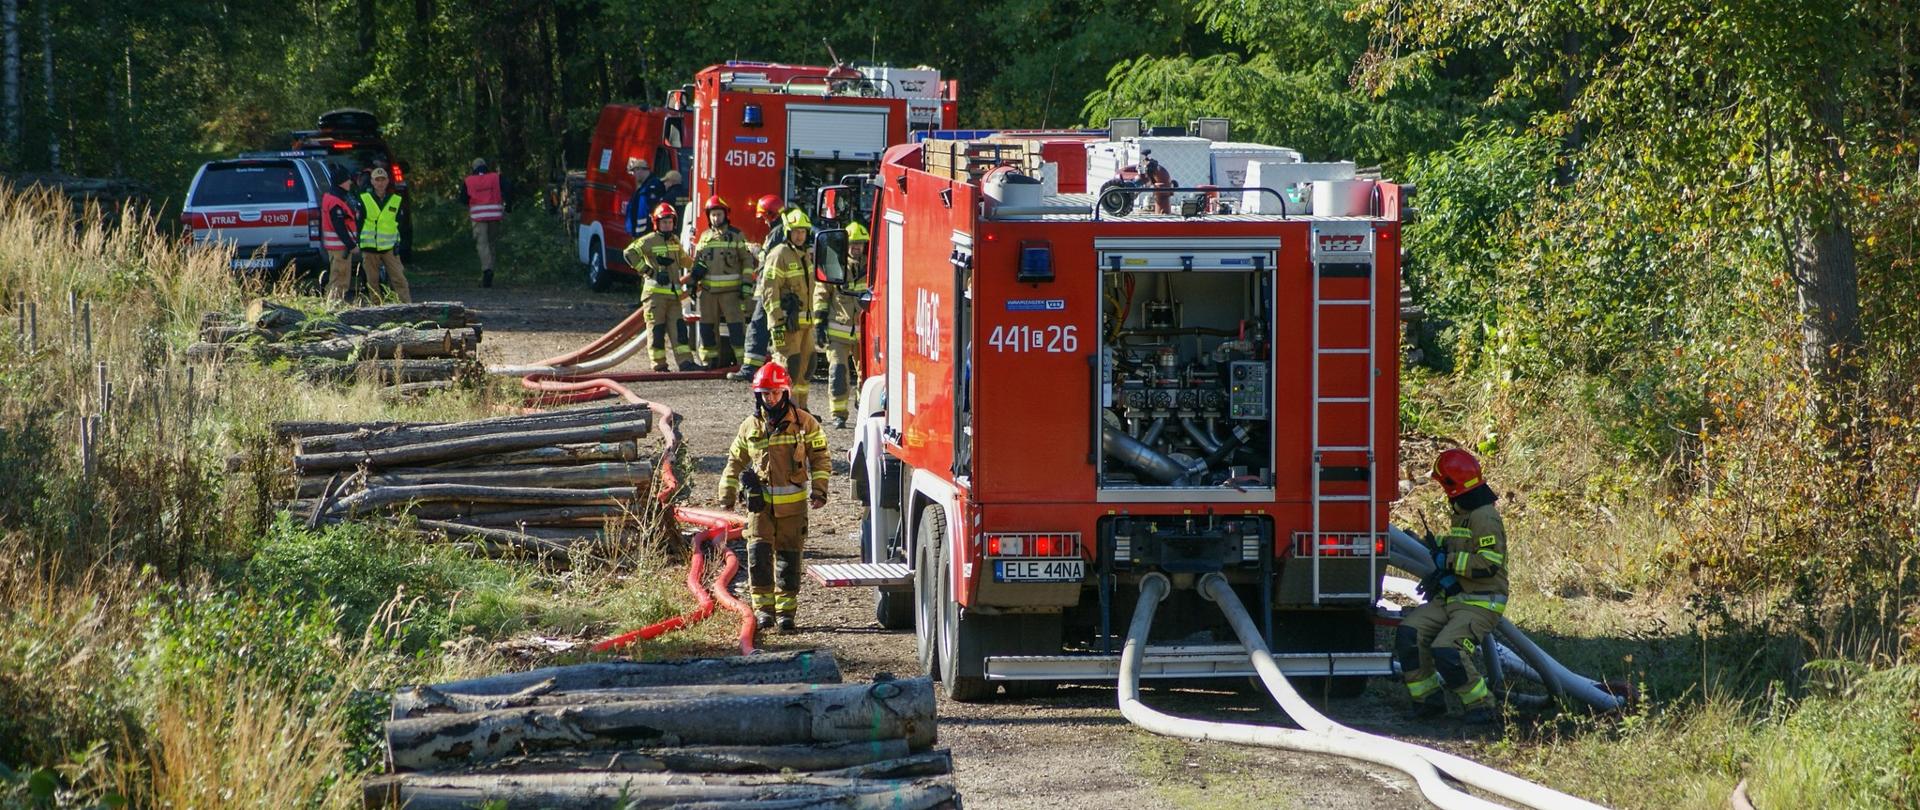 strażacy i wozy strażackie stojące wzdłuż drogi w lesie, do samochodów podłączone są węże strażackie, po lewej stronie drogi składowane są w trzech kupkach wycięte pnie drzew